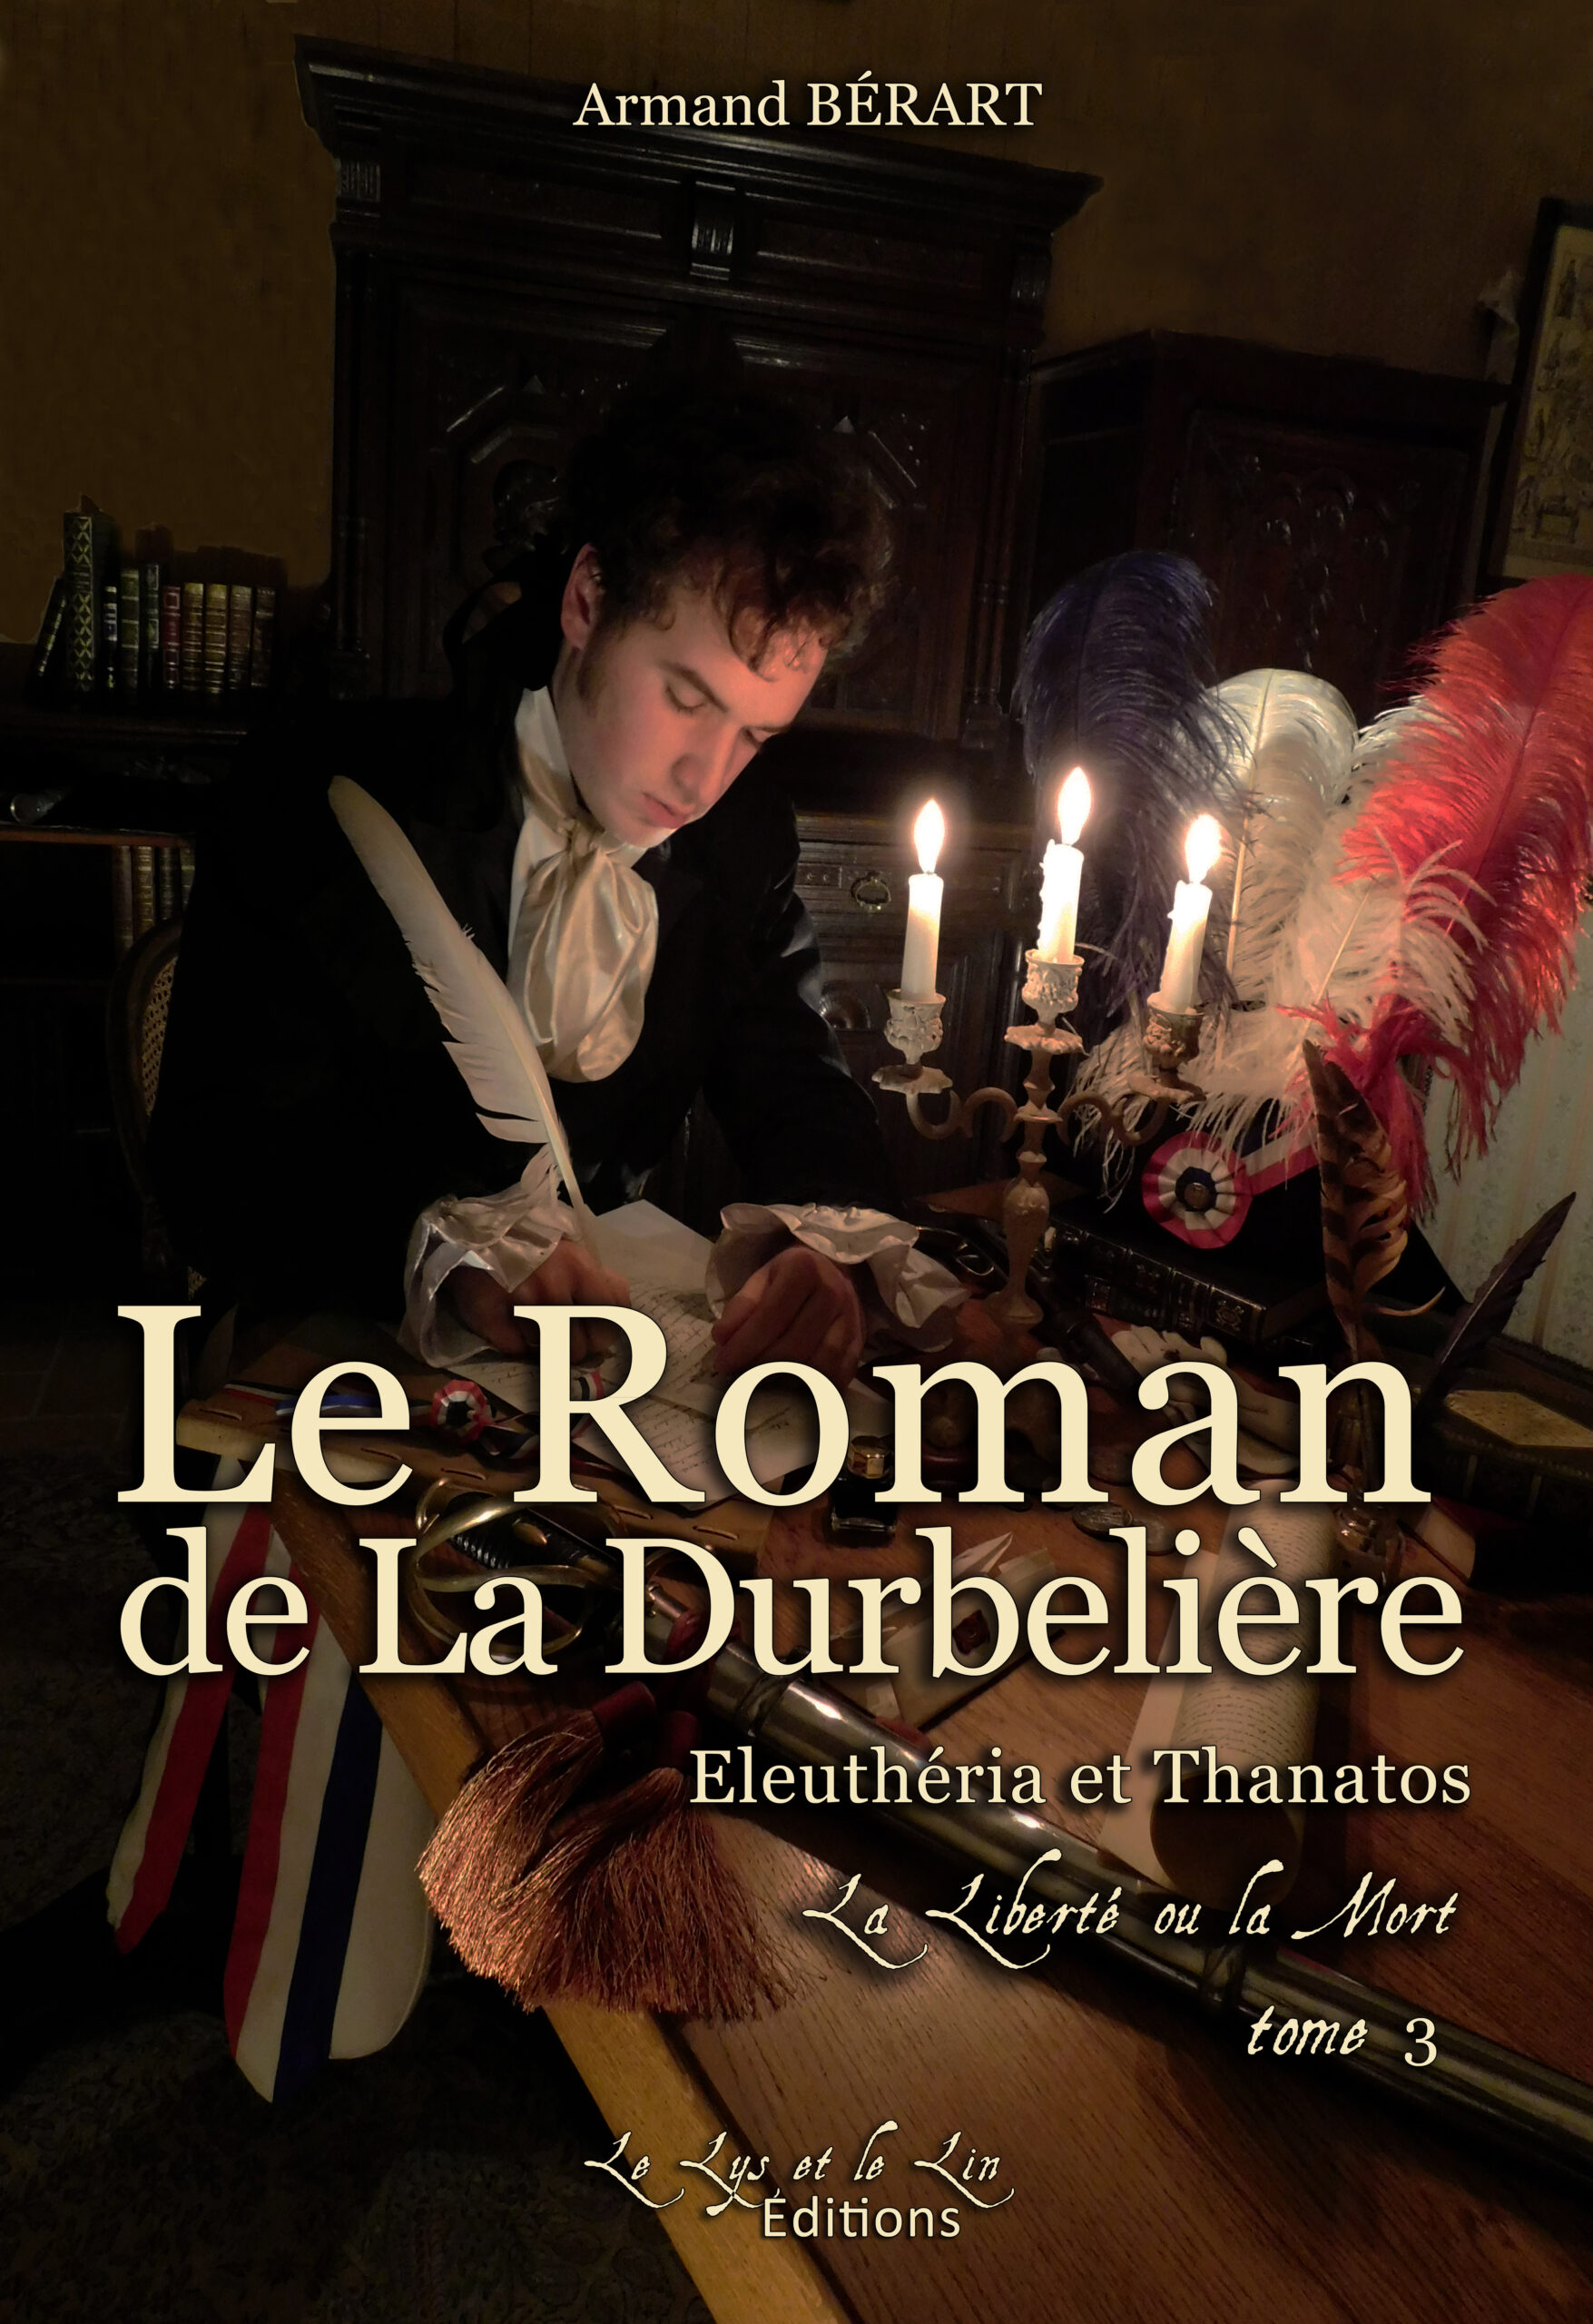 Le Roman de La Durbelière : Eleuthéria et Thanatos, la Liberté ou la Mort (tome 3) - Armand Bérart